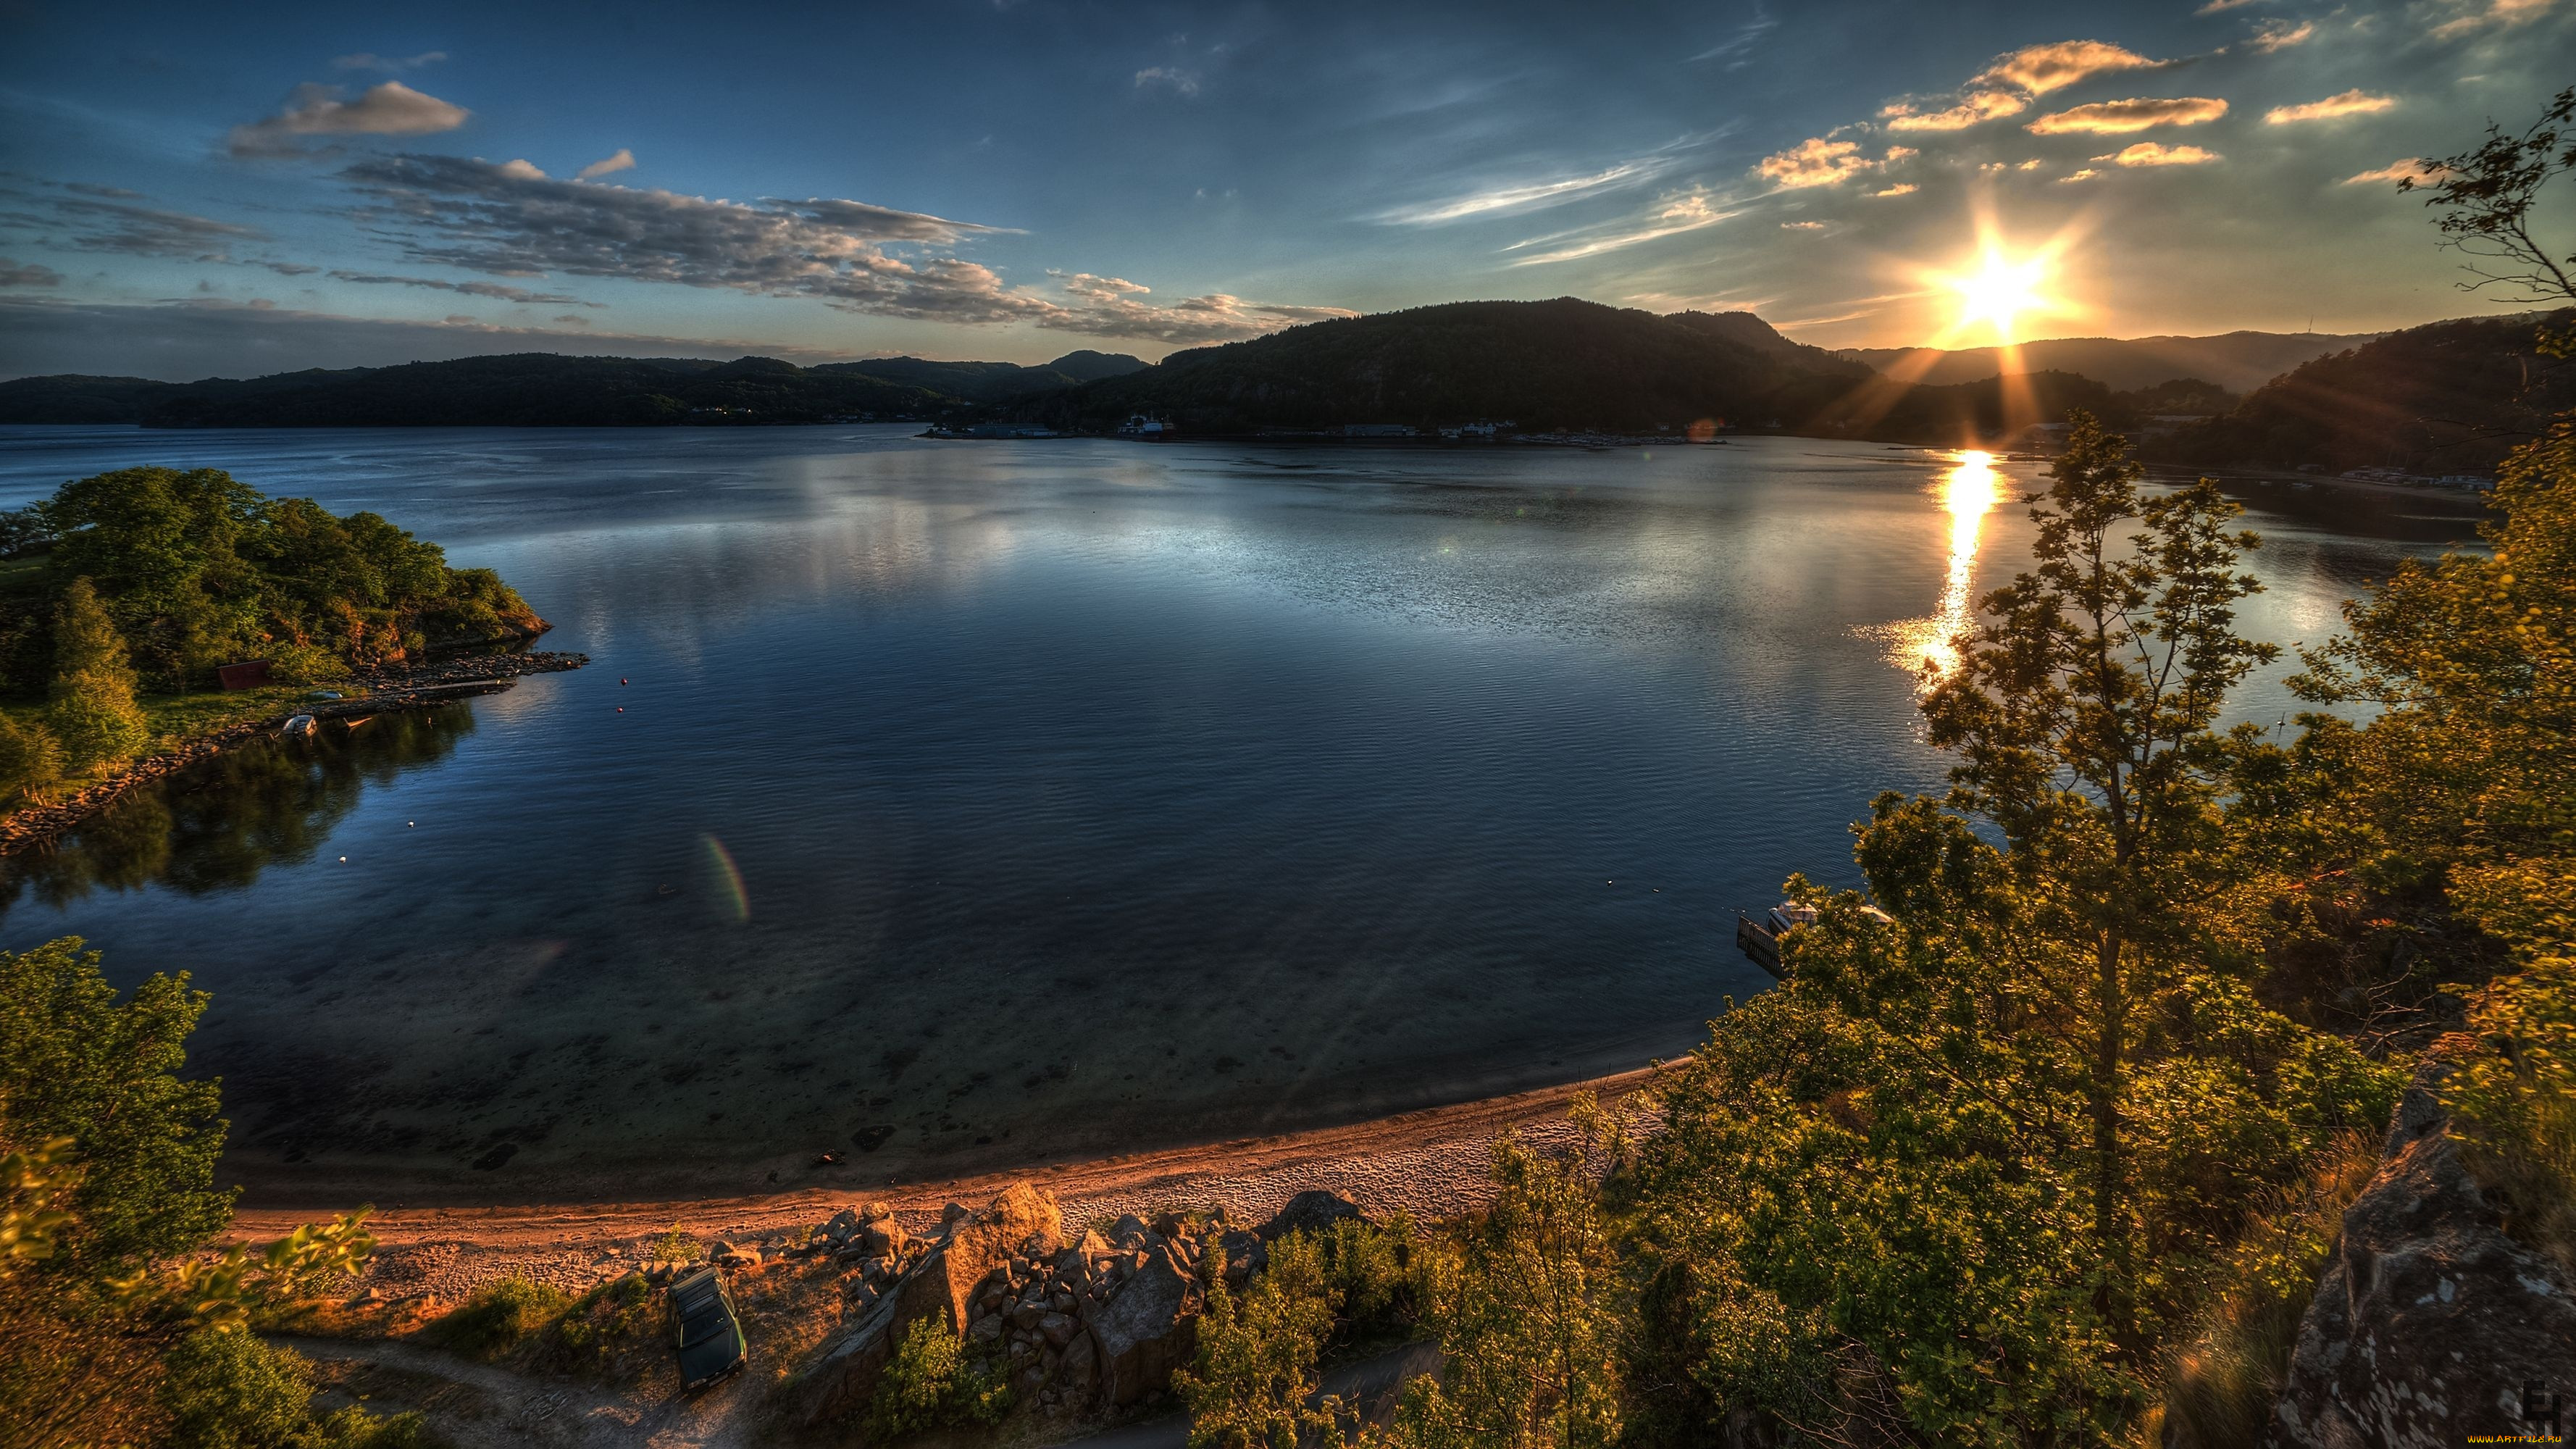 Картинки на обои. Озеро Тургояк. Красивый пейзаж. Спокойная природа. Спокойное озеро.